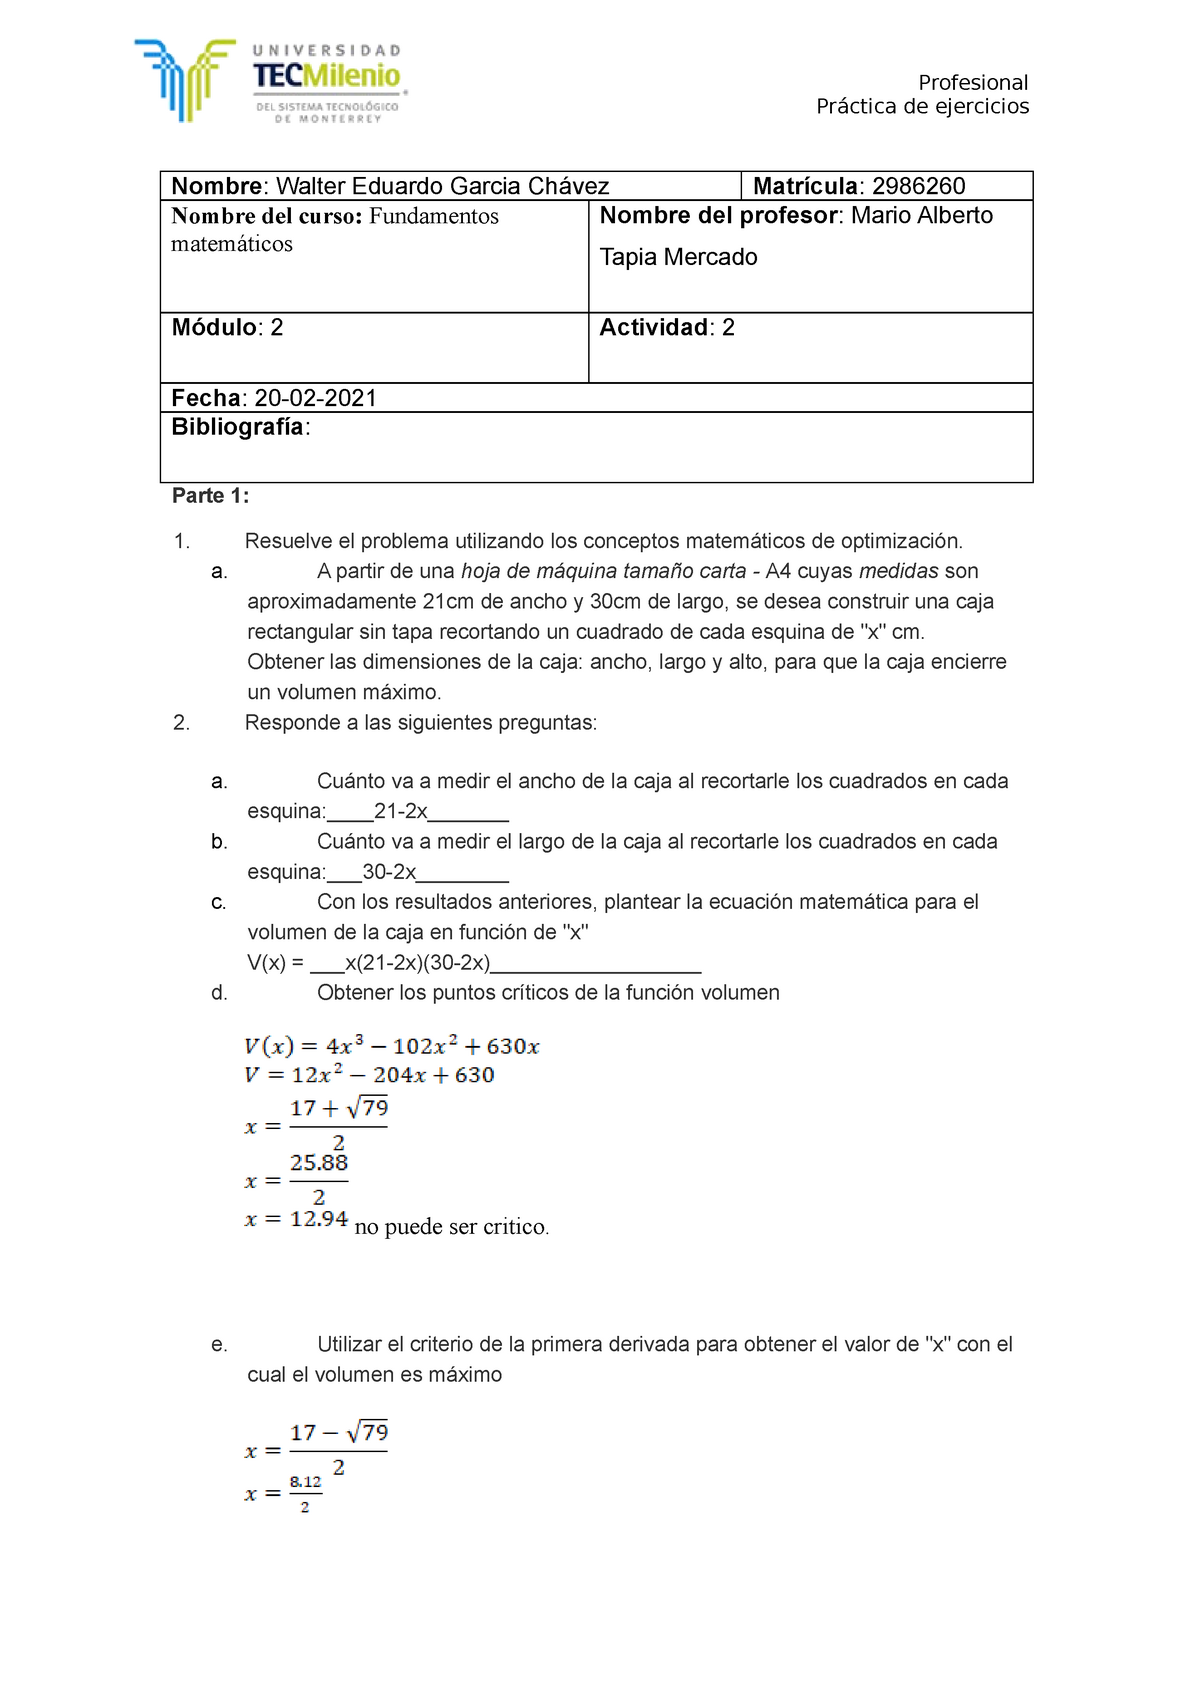 Act2 Fundamentos Matematicos Práctica De Ejercicios Nombre Walter Eduardo Garcia Chávez 6530